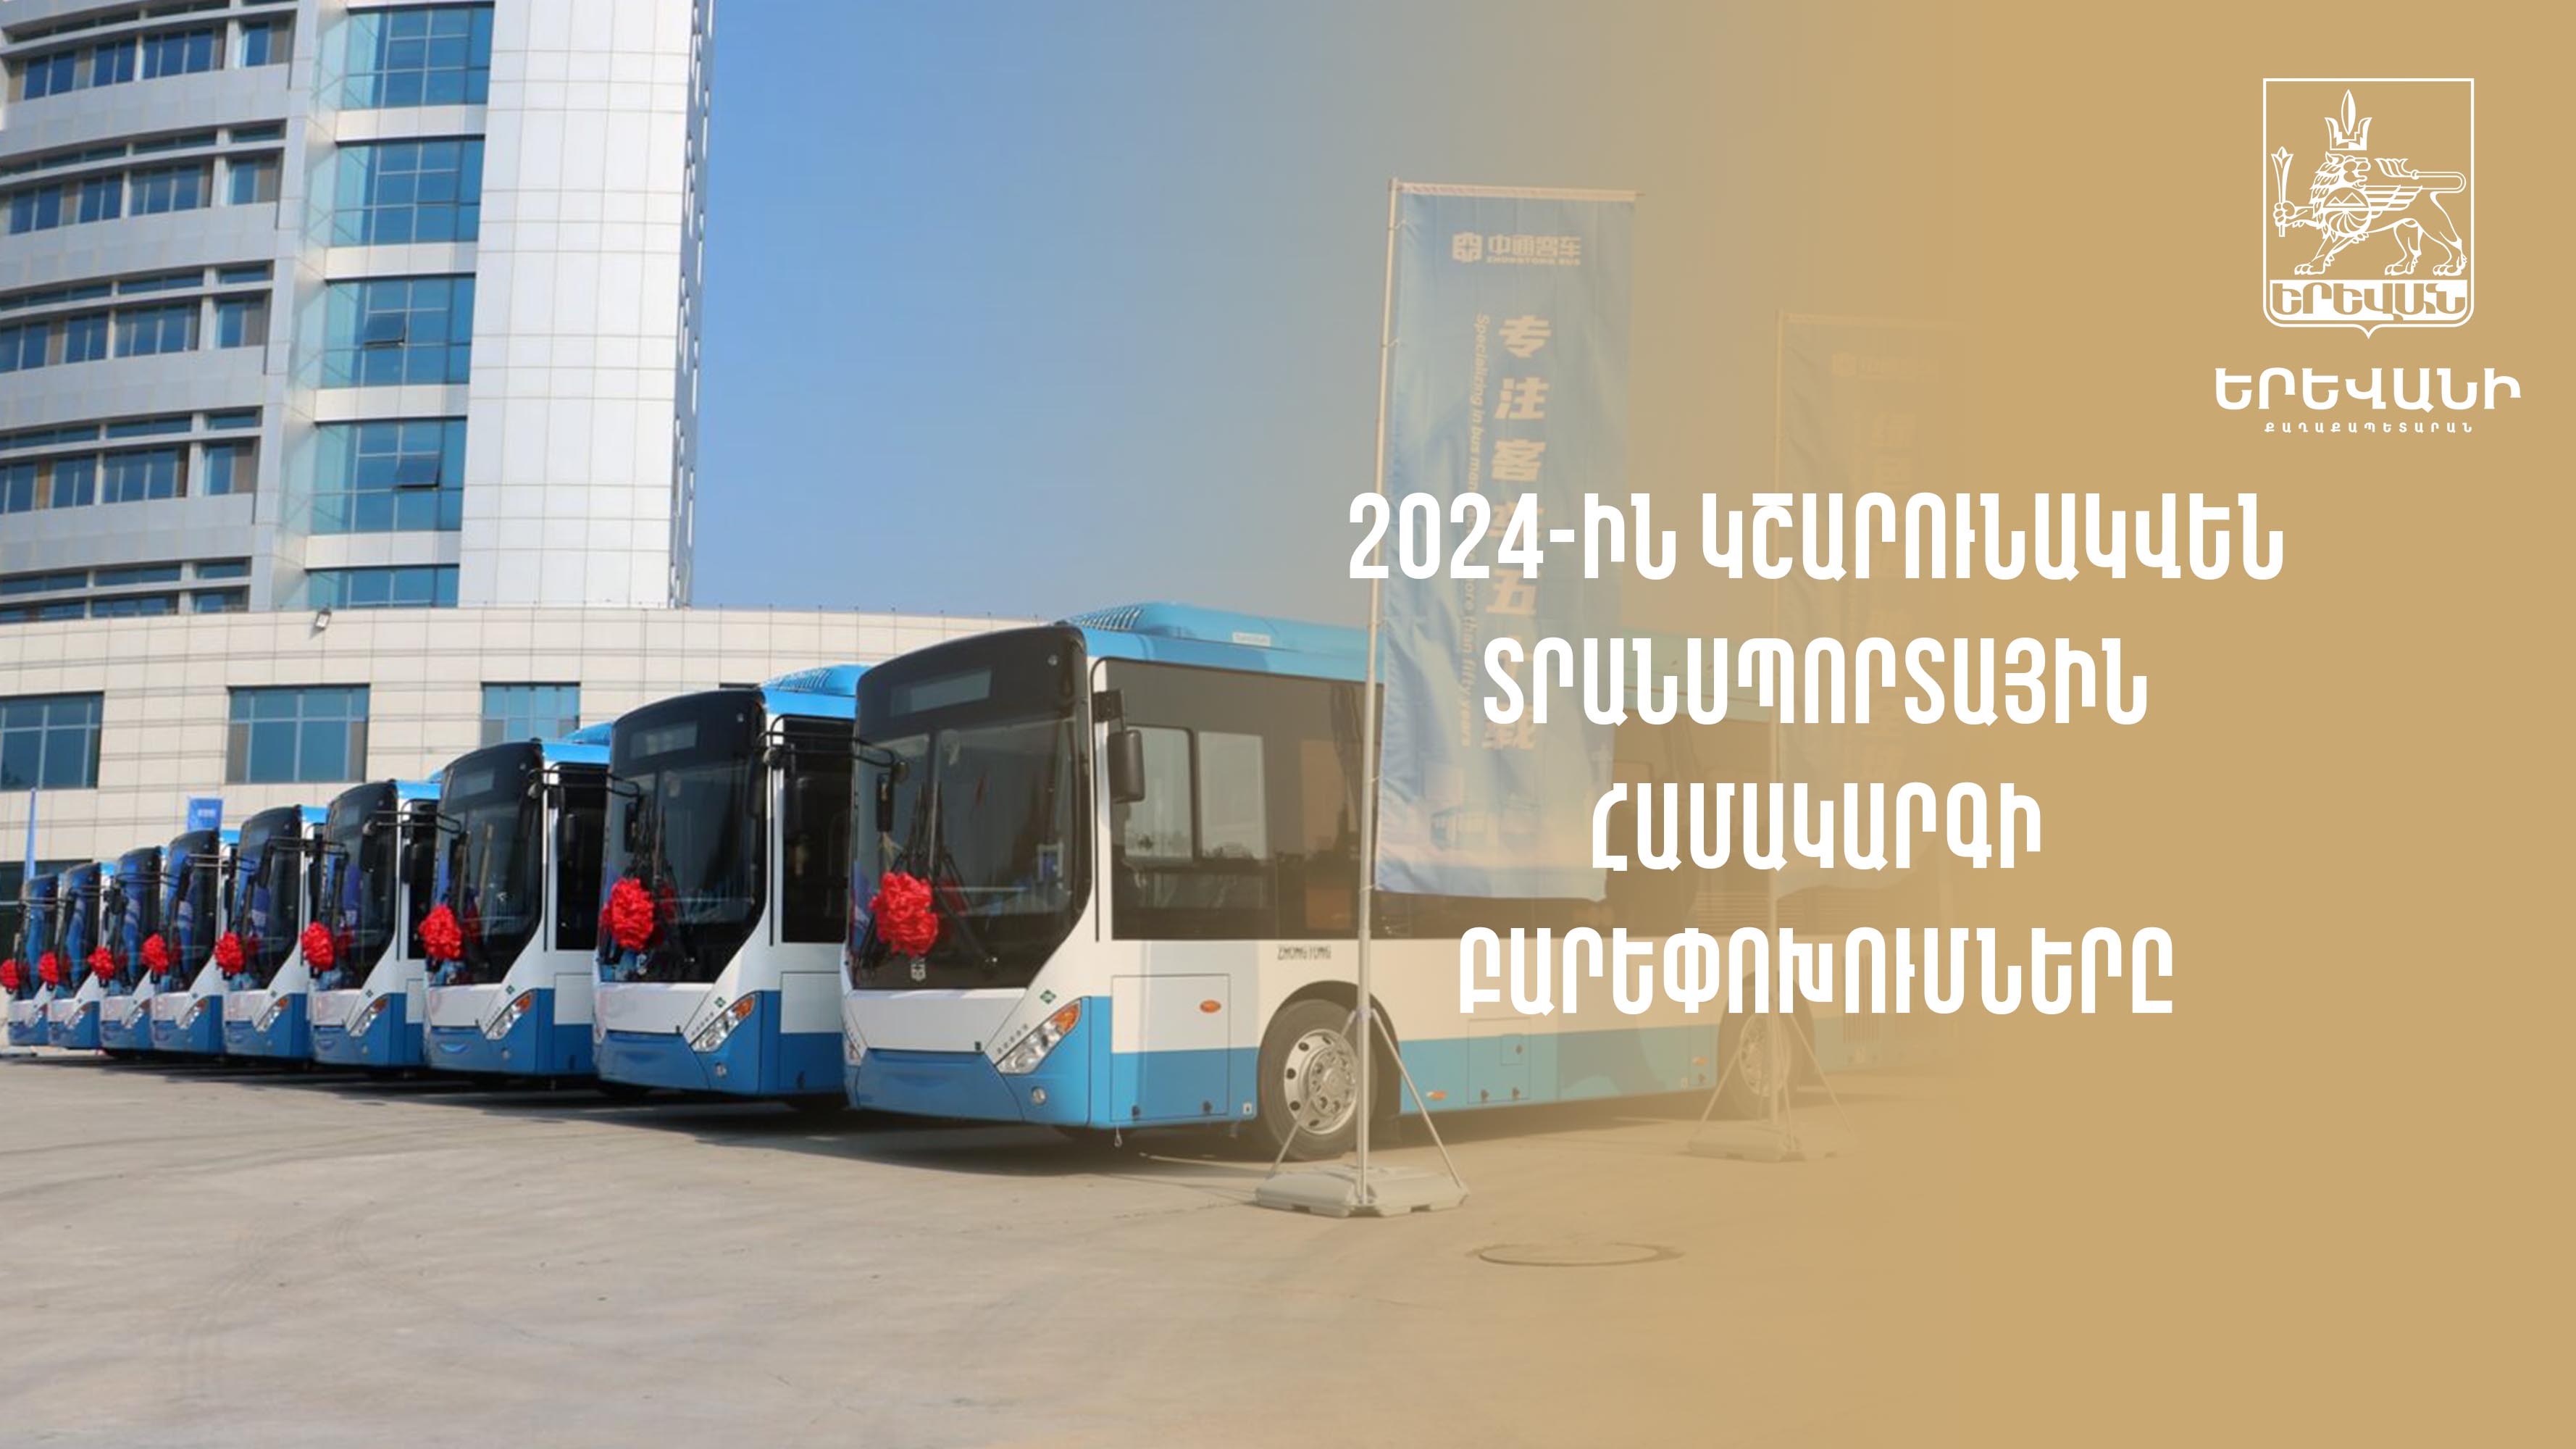 30 նոր ավտոբուս կհամալրի մայրաքաղաքի երթուղային ցանցը